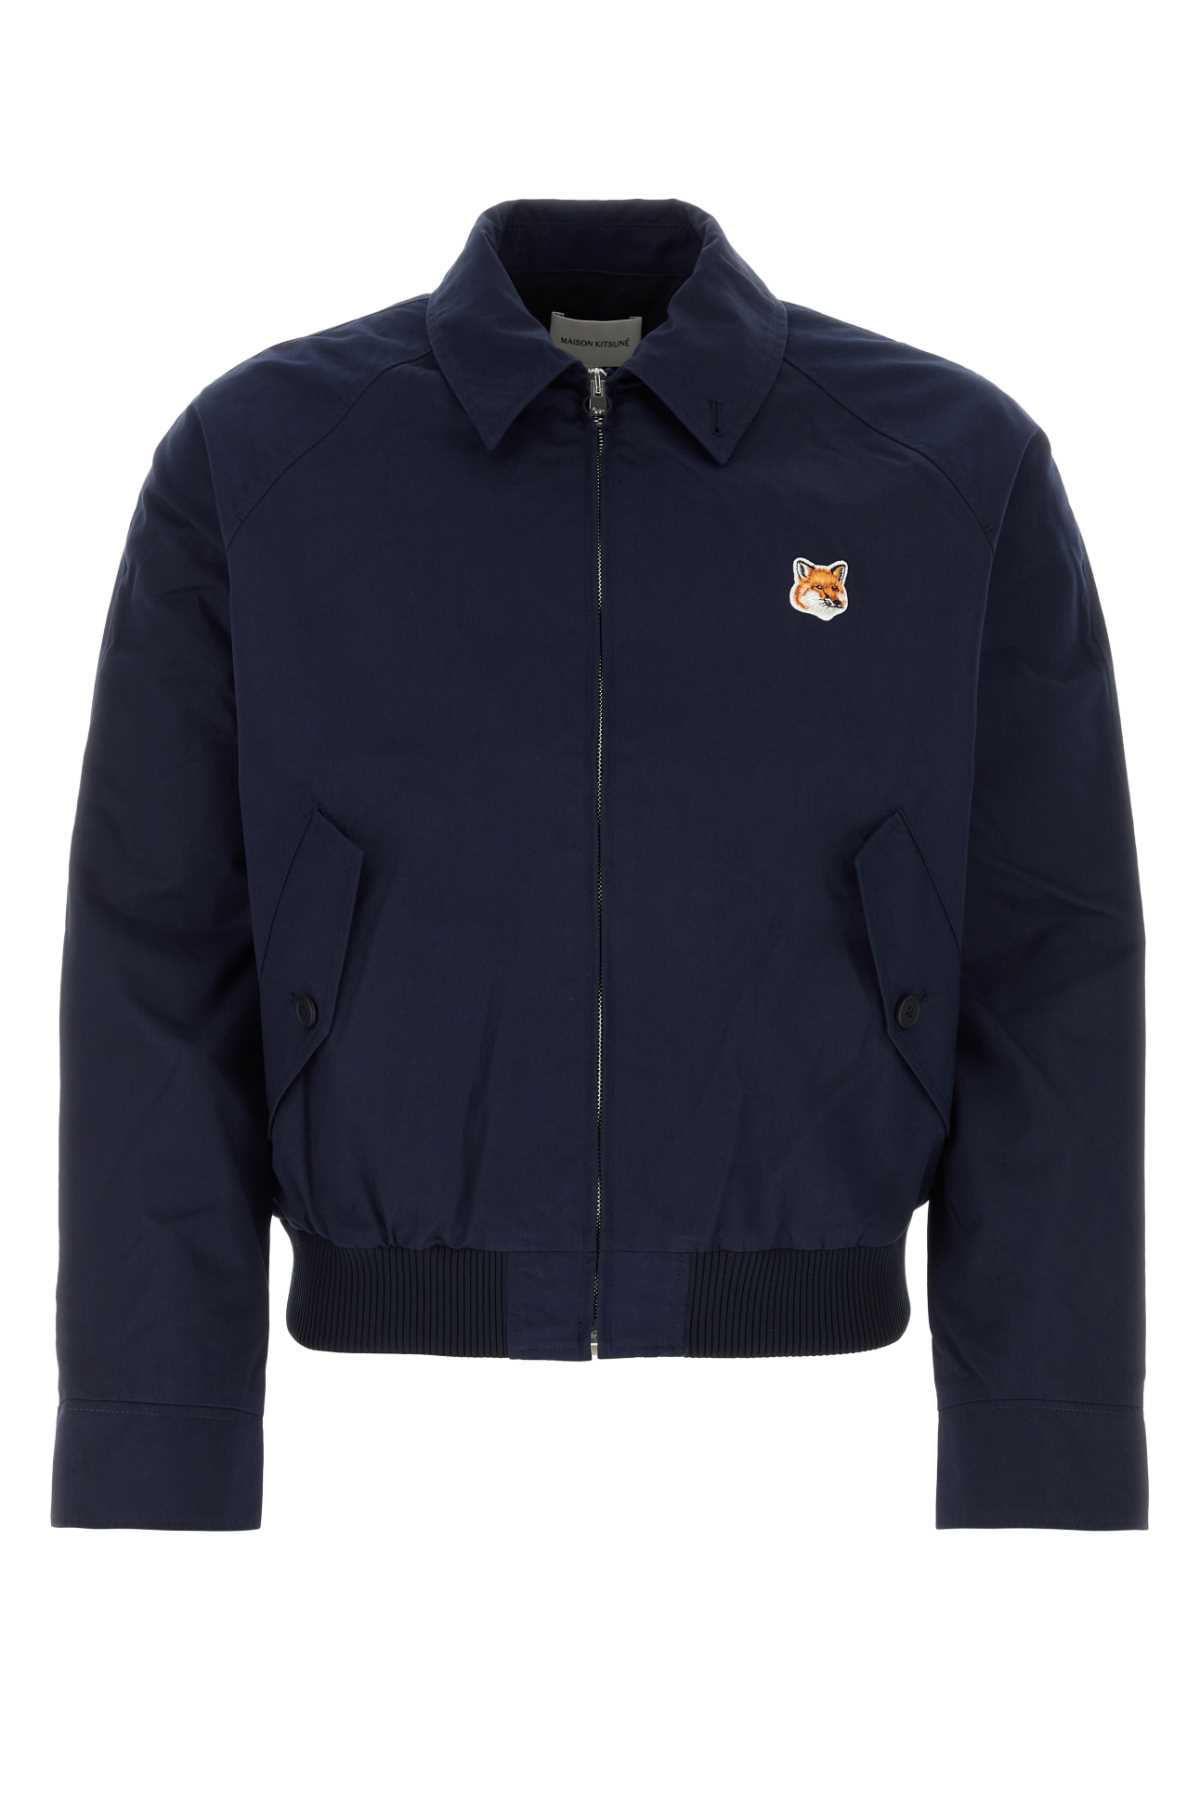 Maison Kitsuné Navy Blue Cotton Blend Jacket